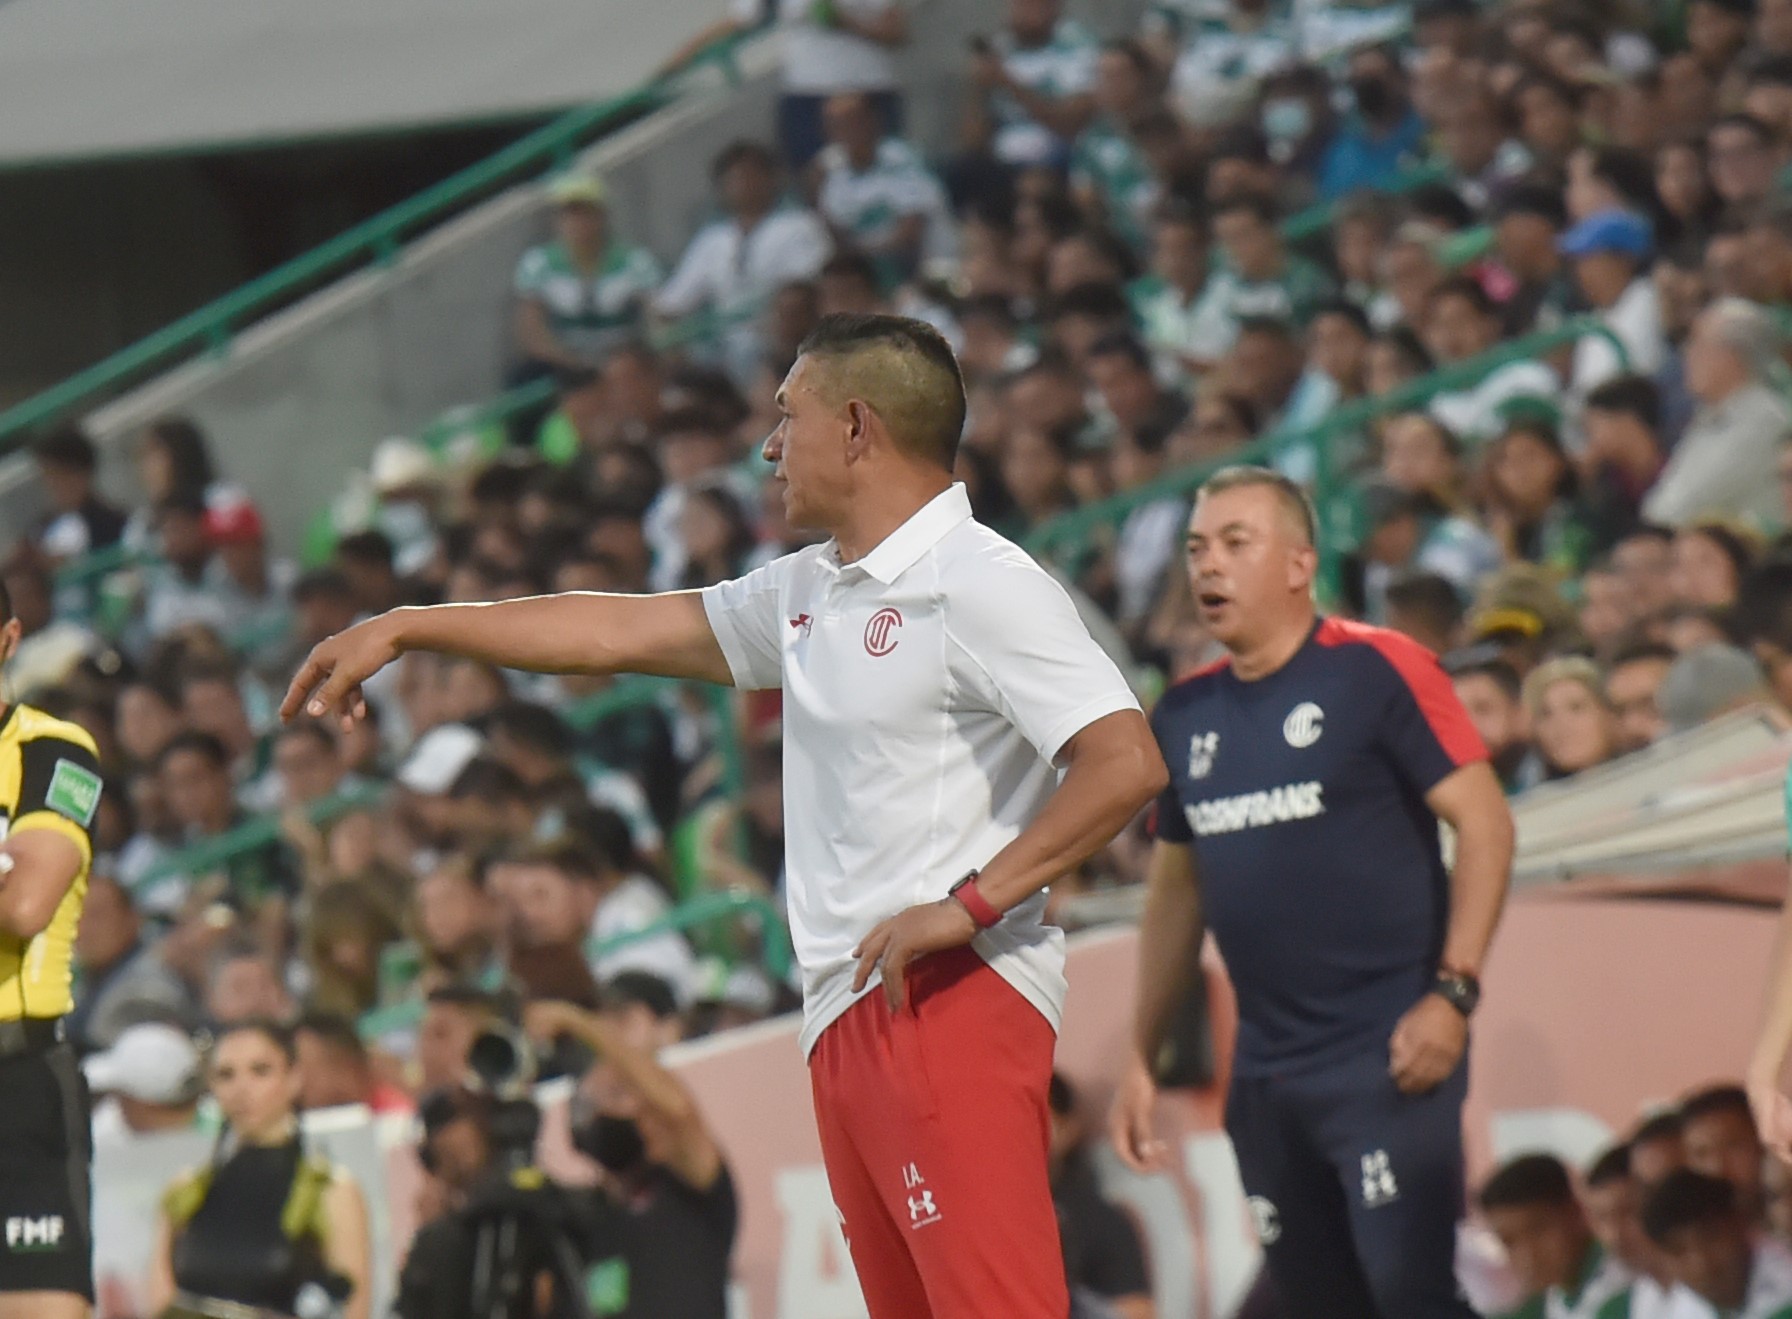 'Fue un partido muy duro', dice Ambriz tras pase a semifinal derrotando a Santos